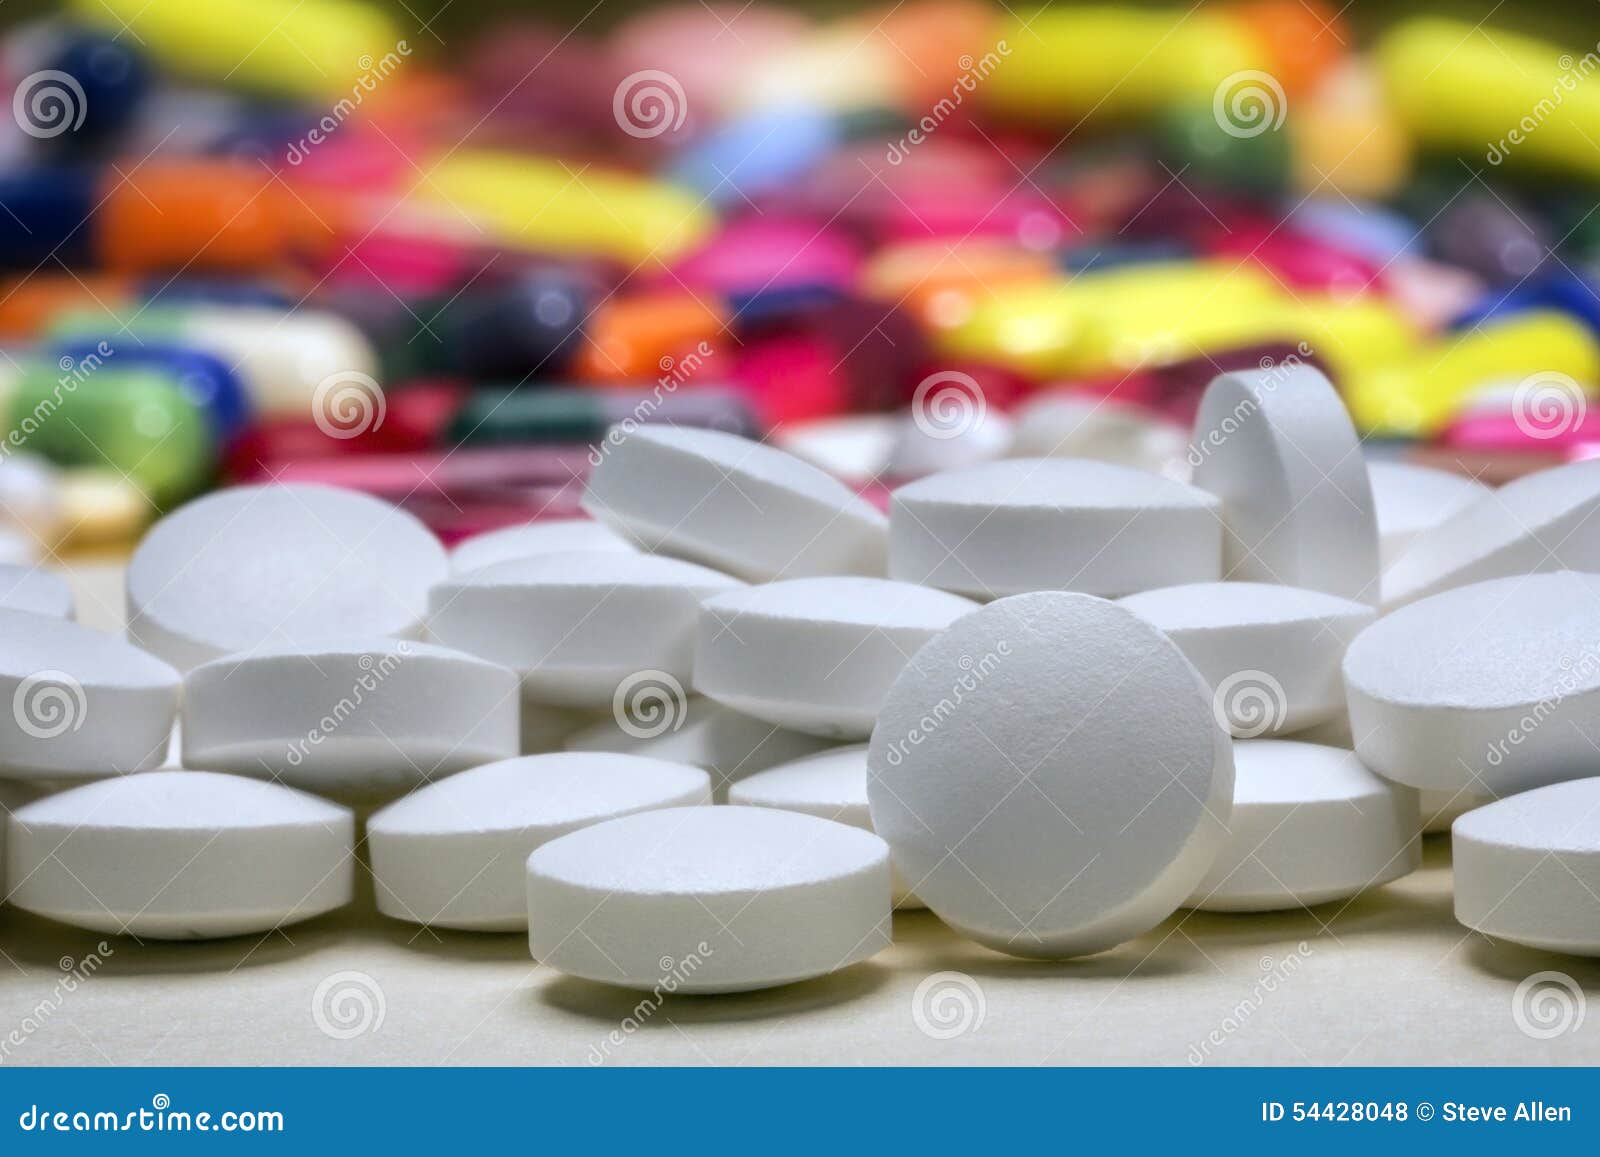 medicine - drugs pills tablets